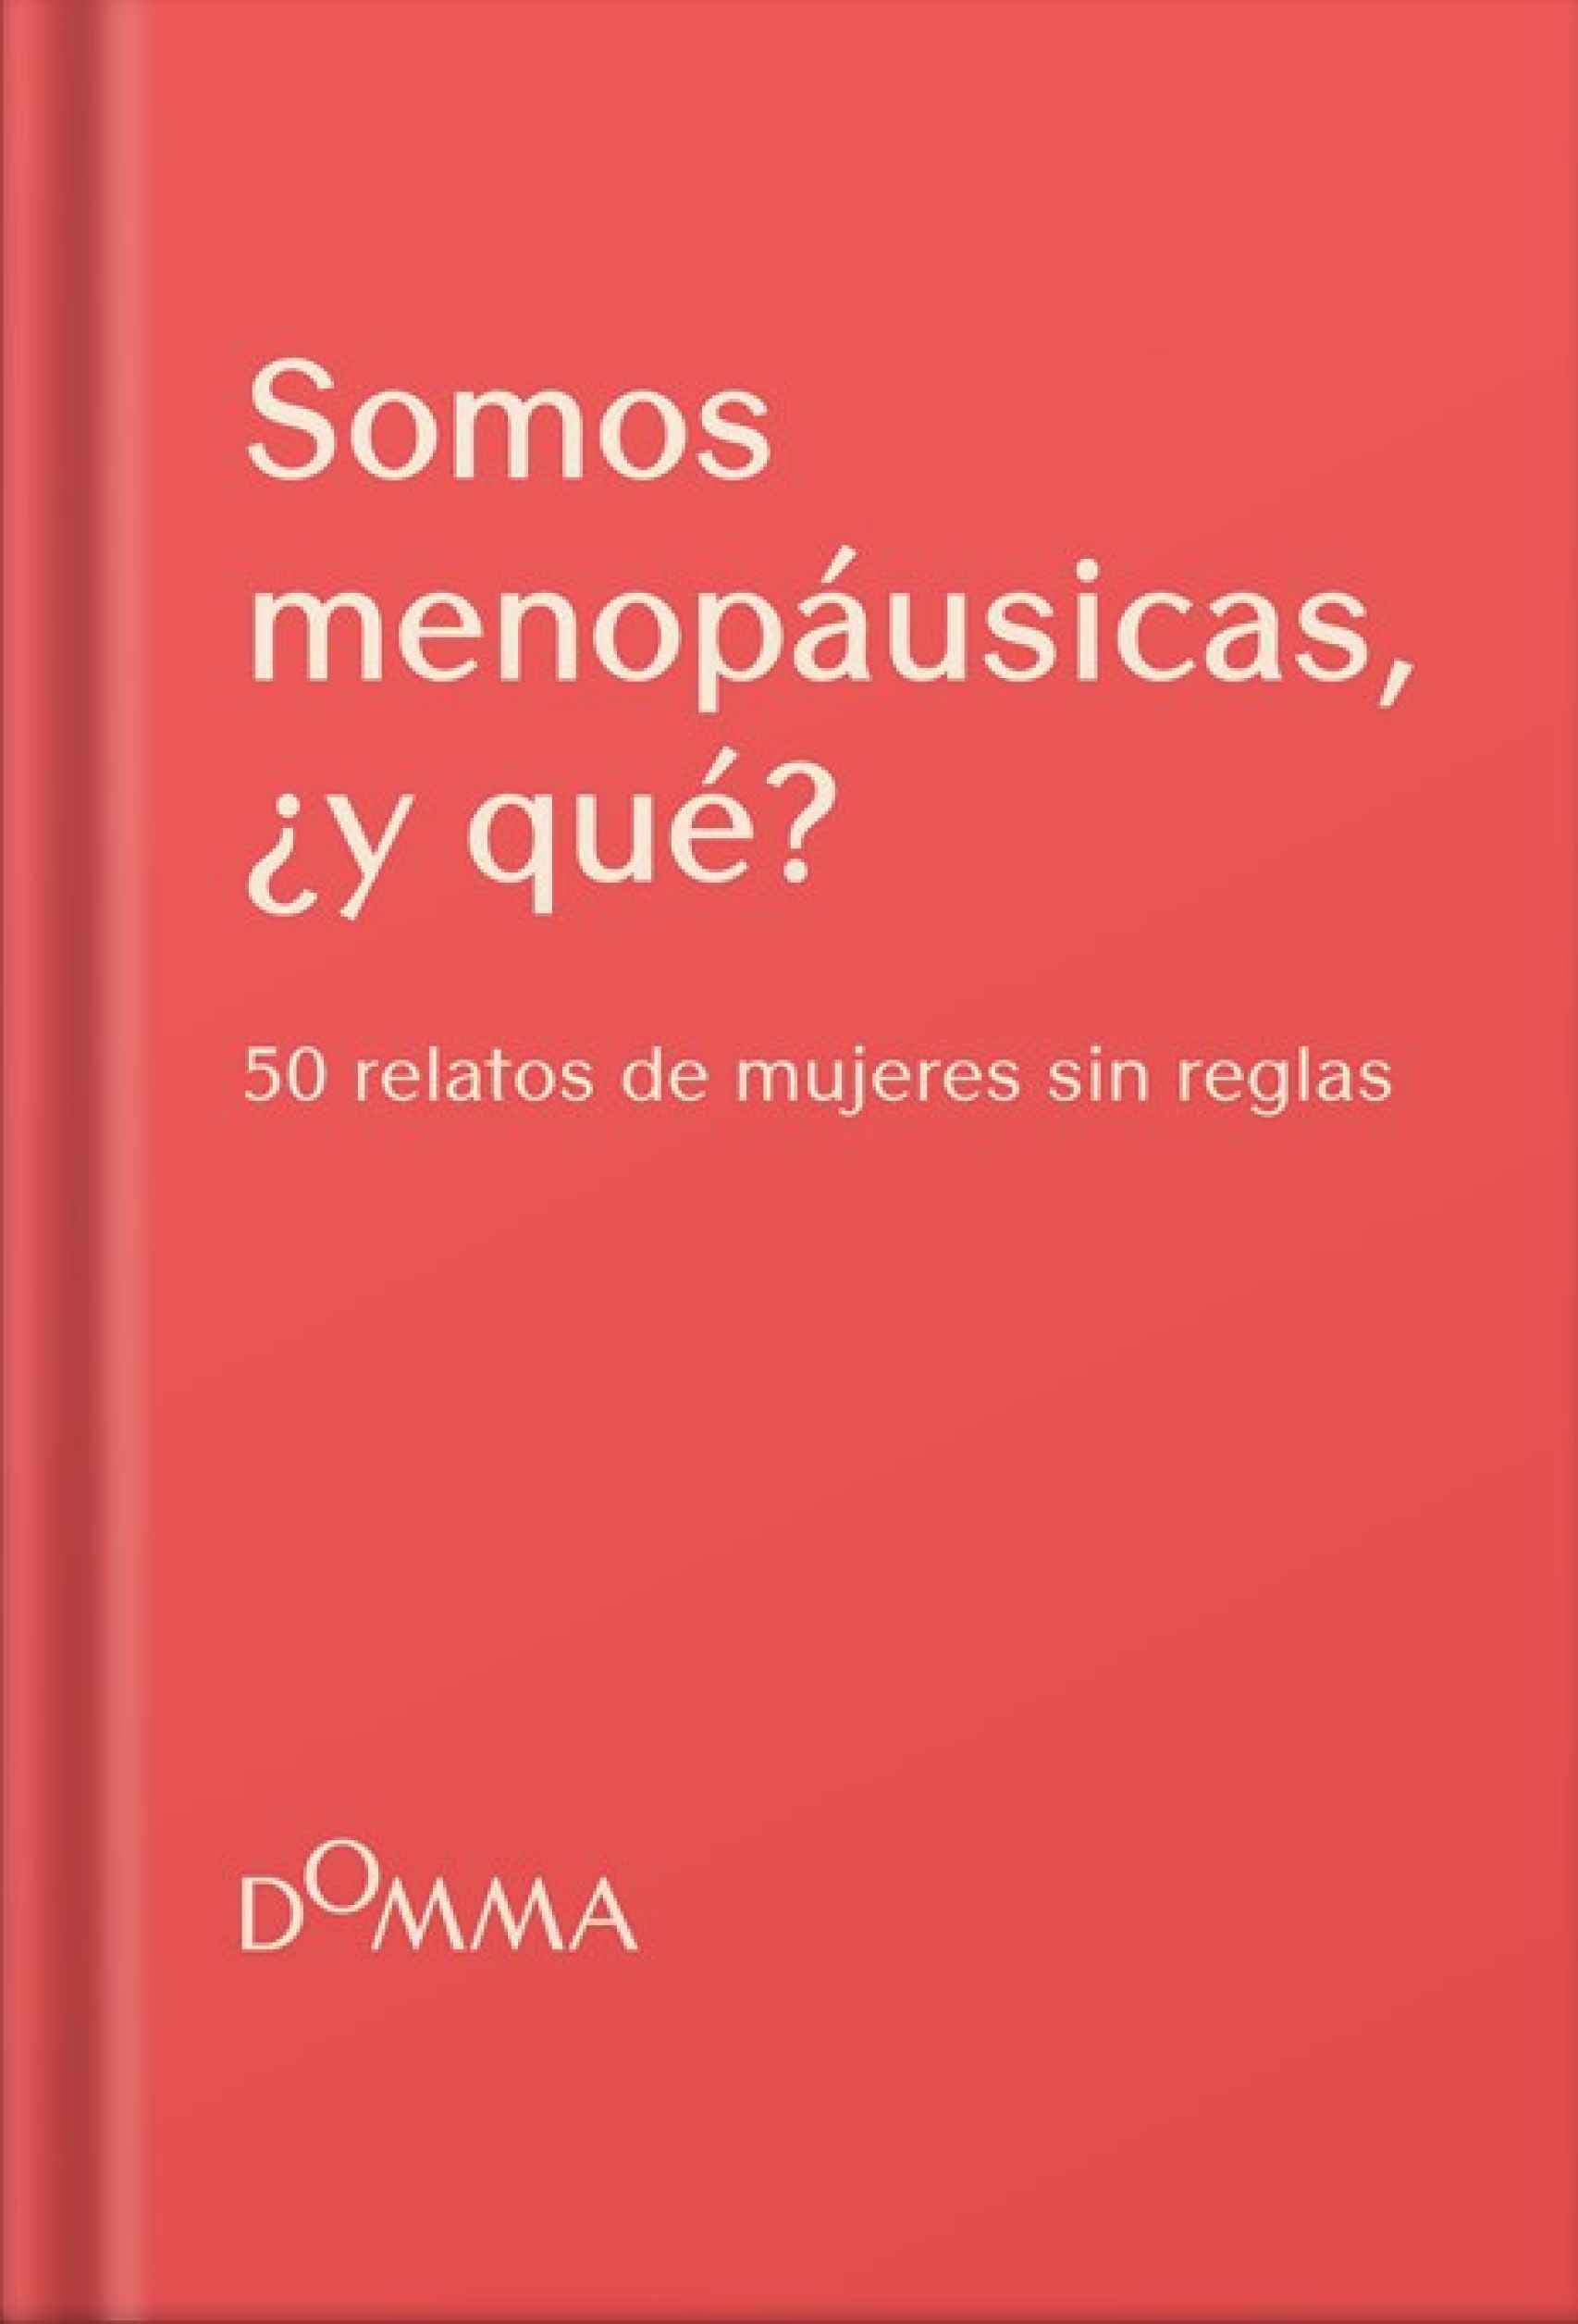 El libro coral, 'Somos Menopáusicas, ¿y qué?'